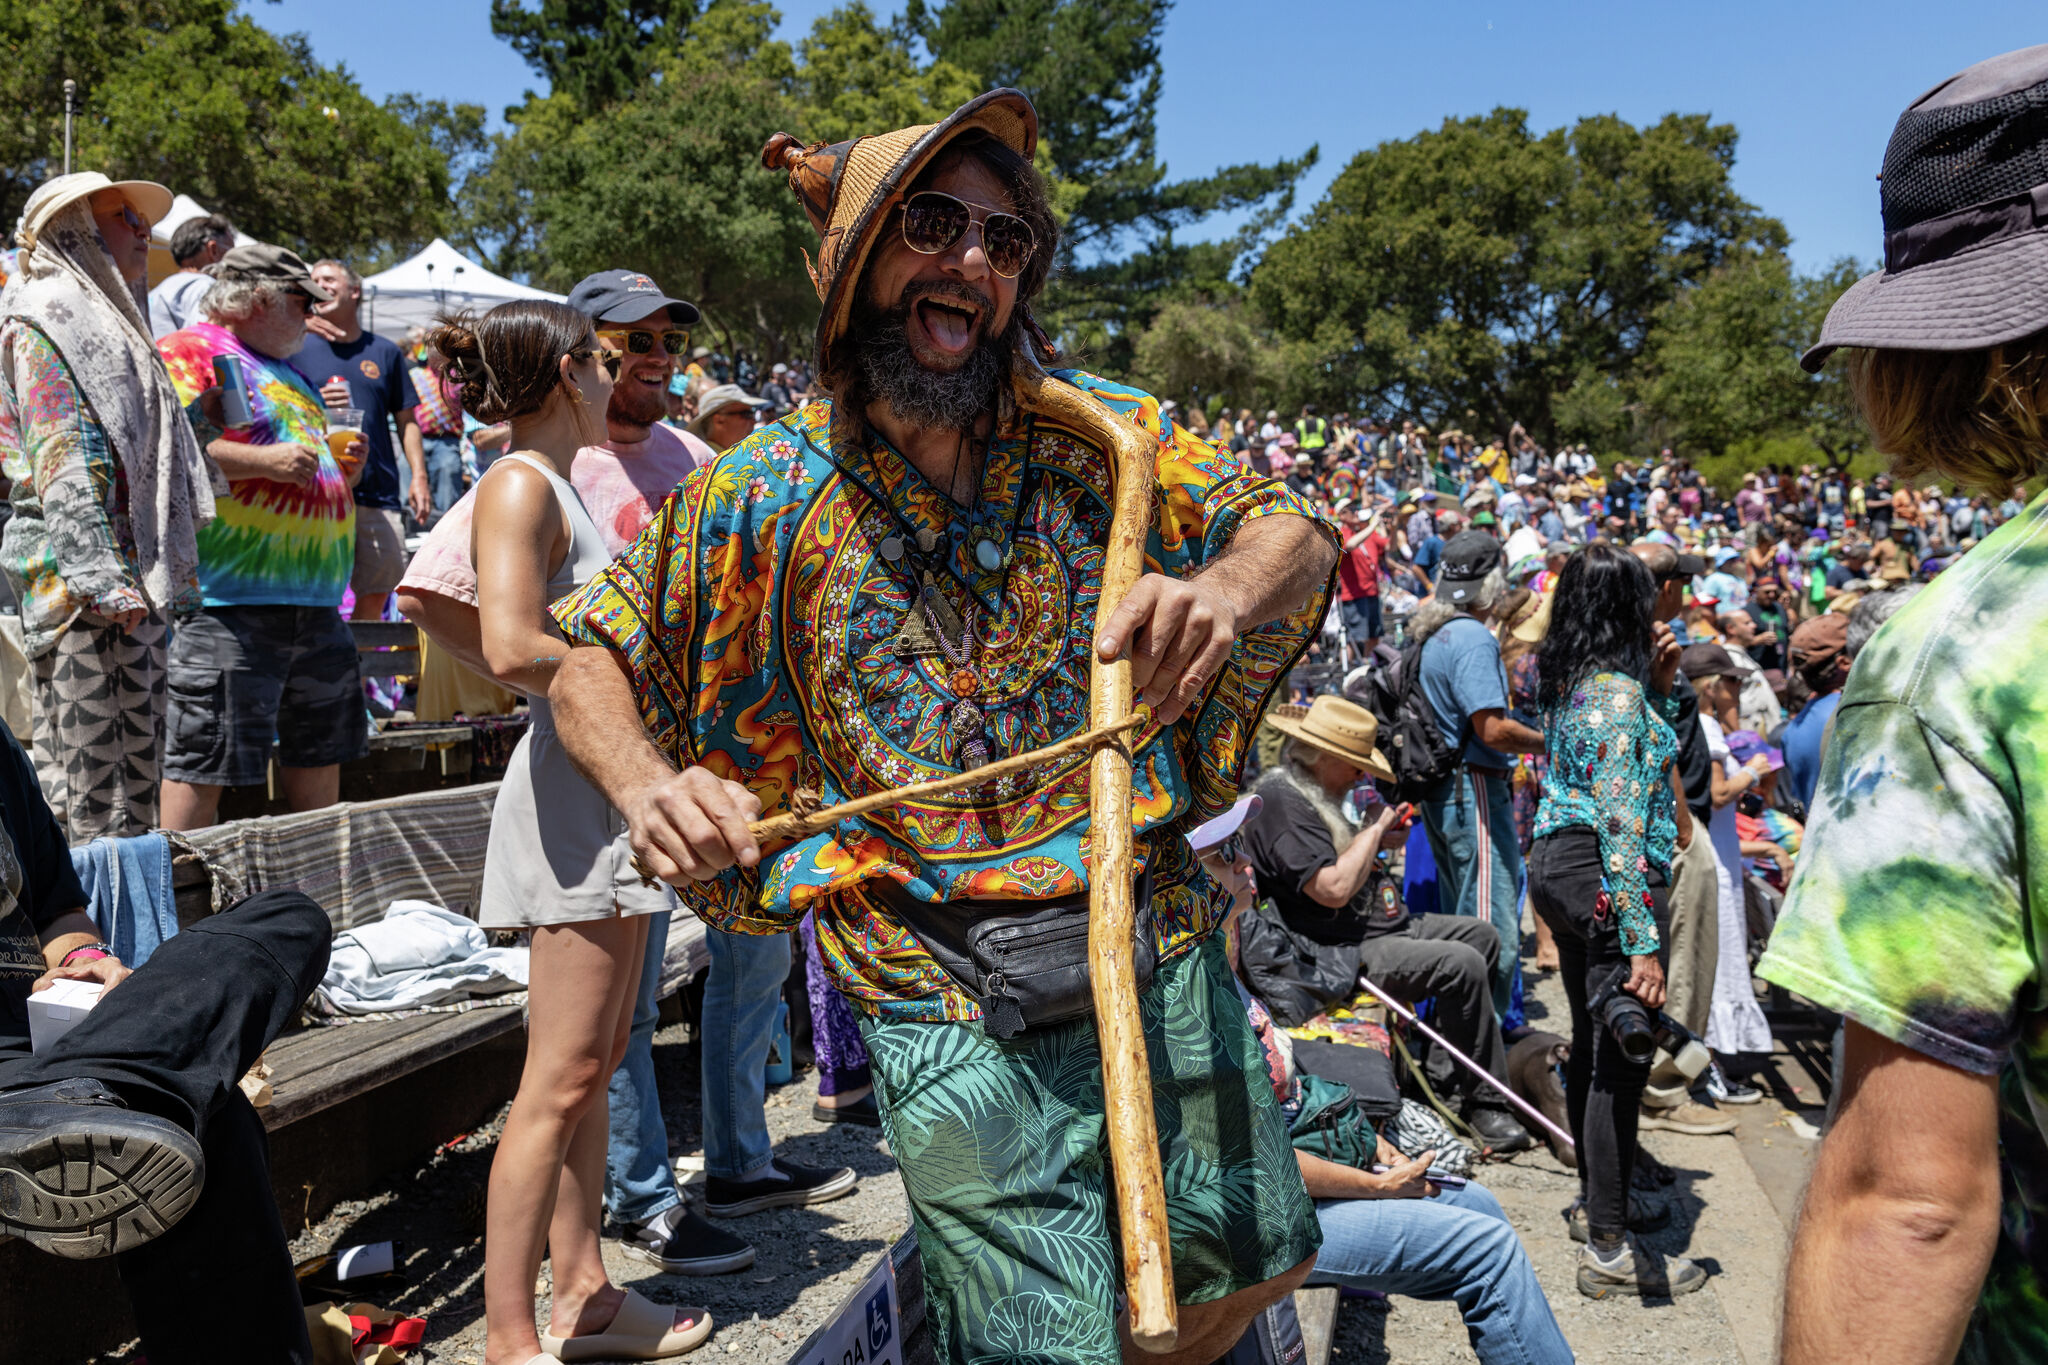 Grateful Dead fans flock to San Francisco for Jerry Garcia celebration